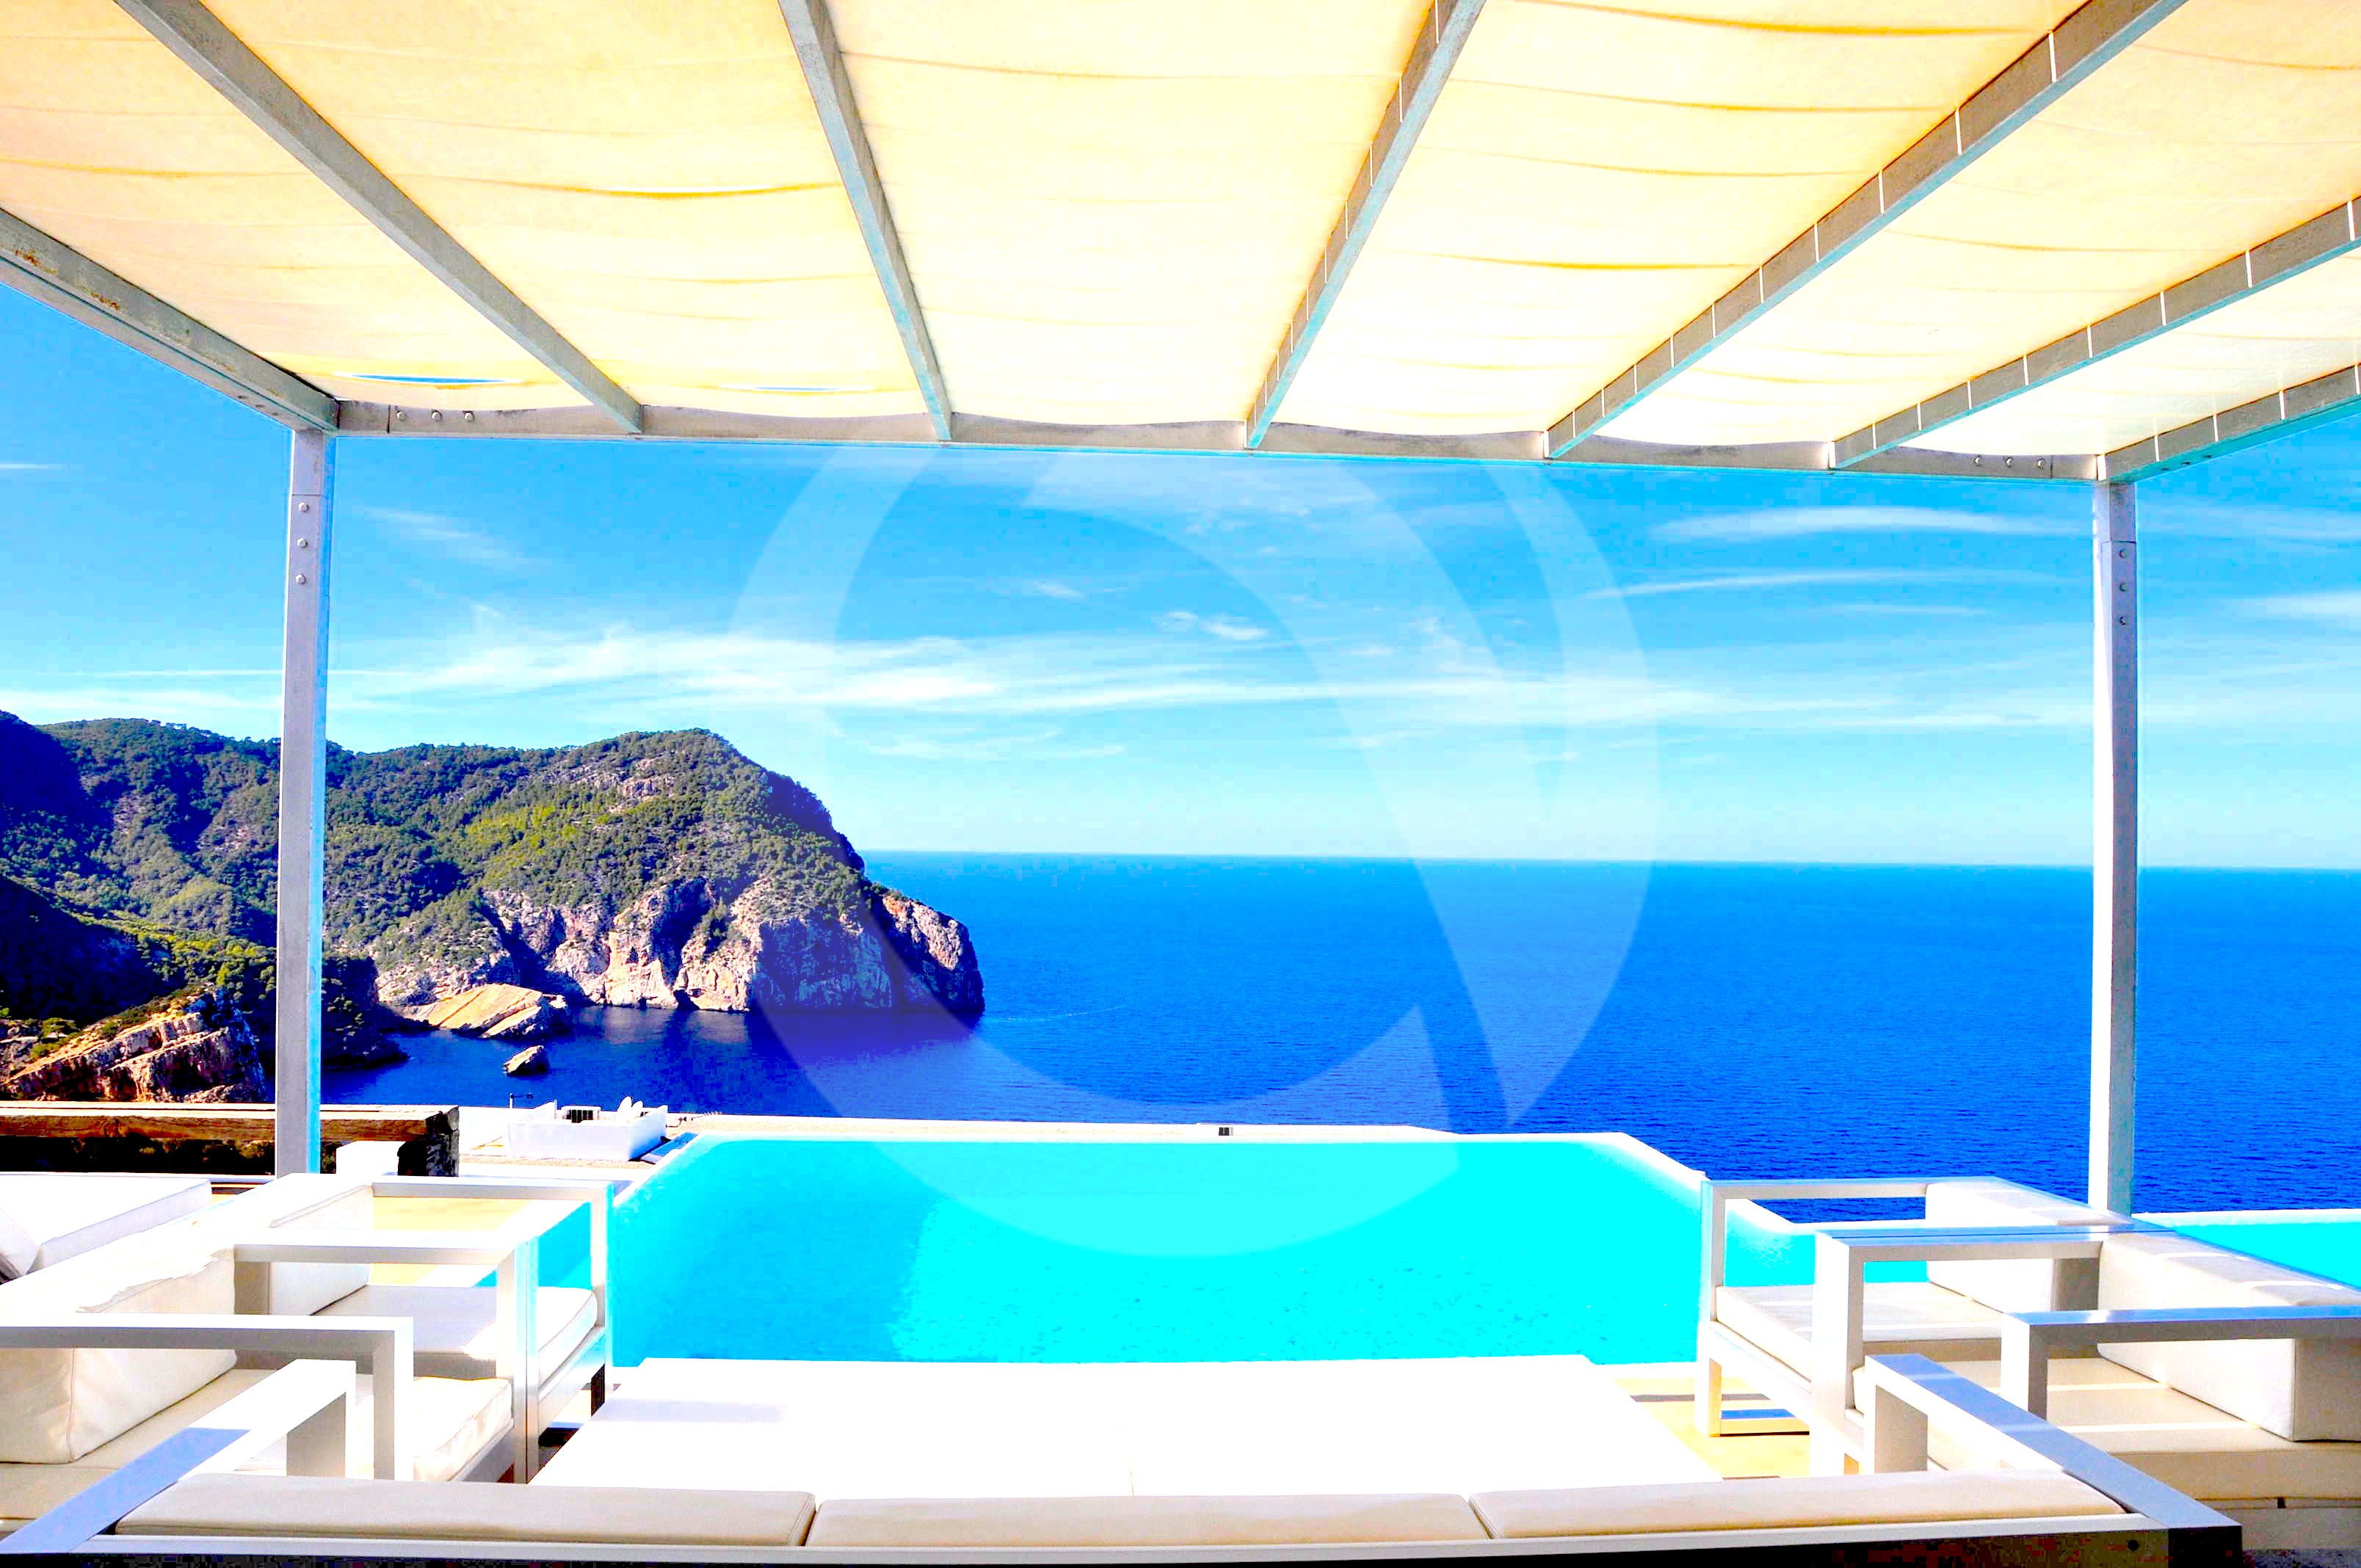 Villa White. 8 bedrooms villa in Ibiza for rent